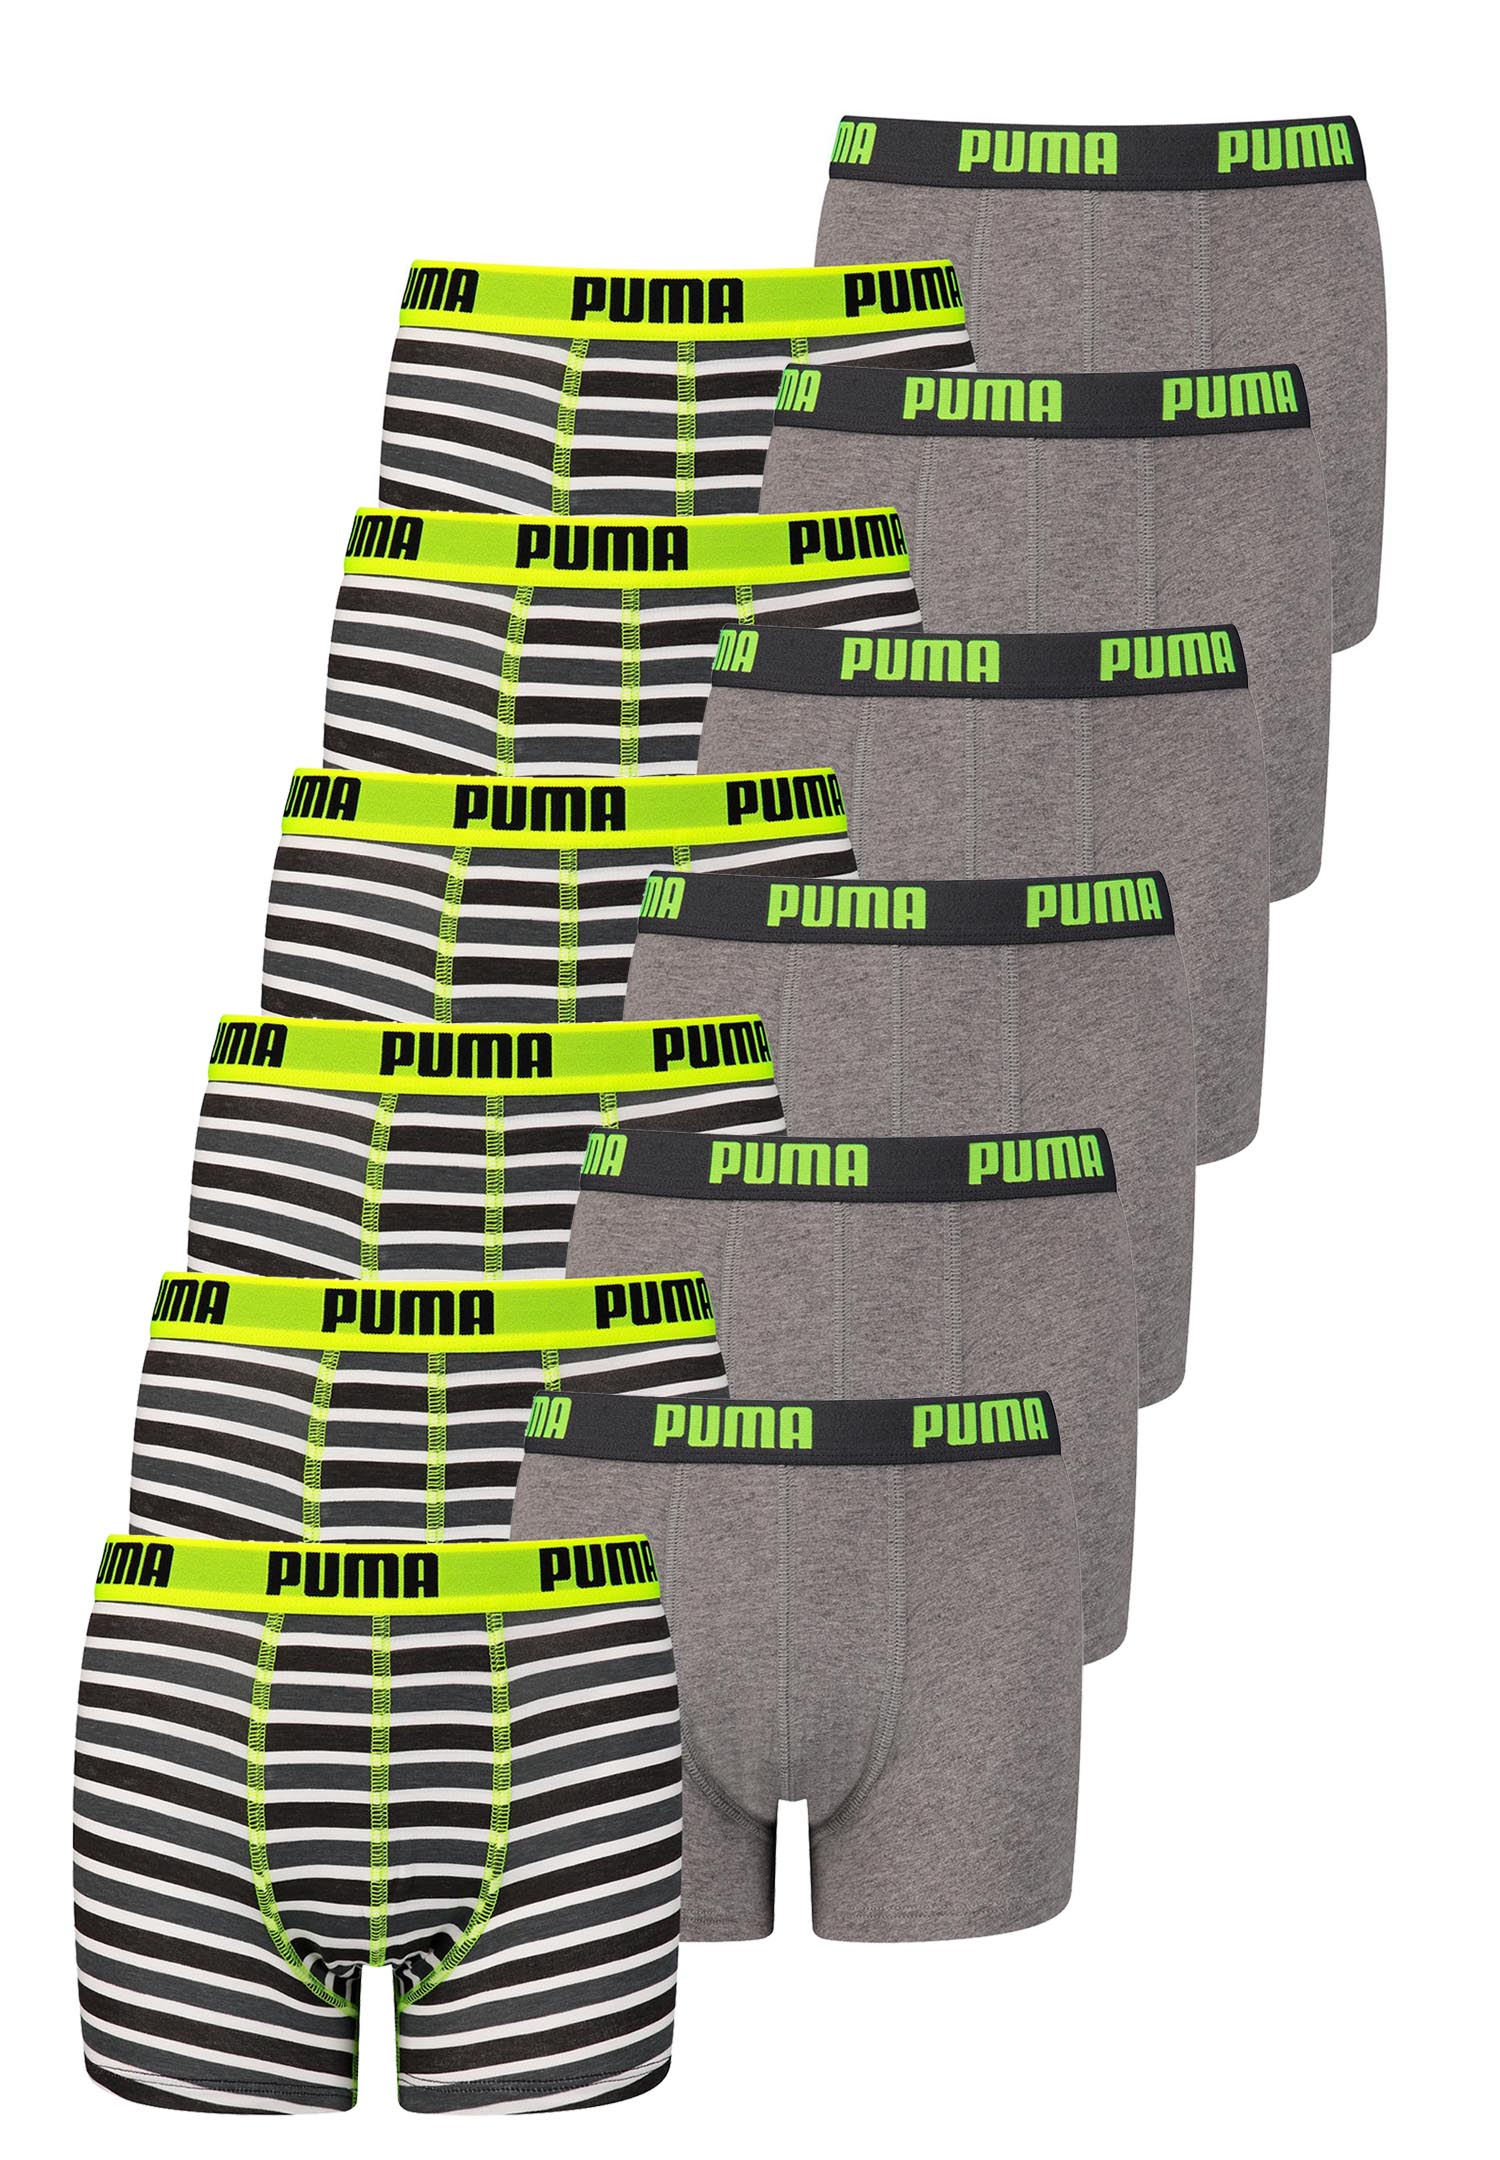 12 er Pack Puma Basic Boxer Printed Stripes Boxershorts Jungen Kinder Unterhose